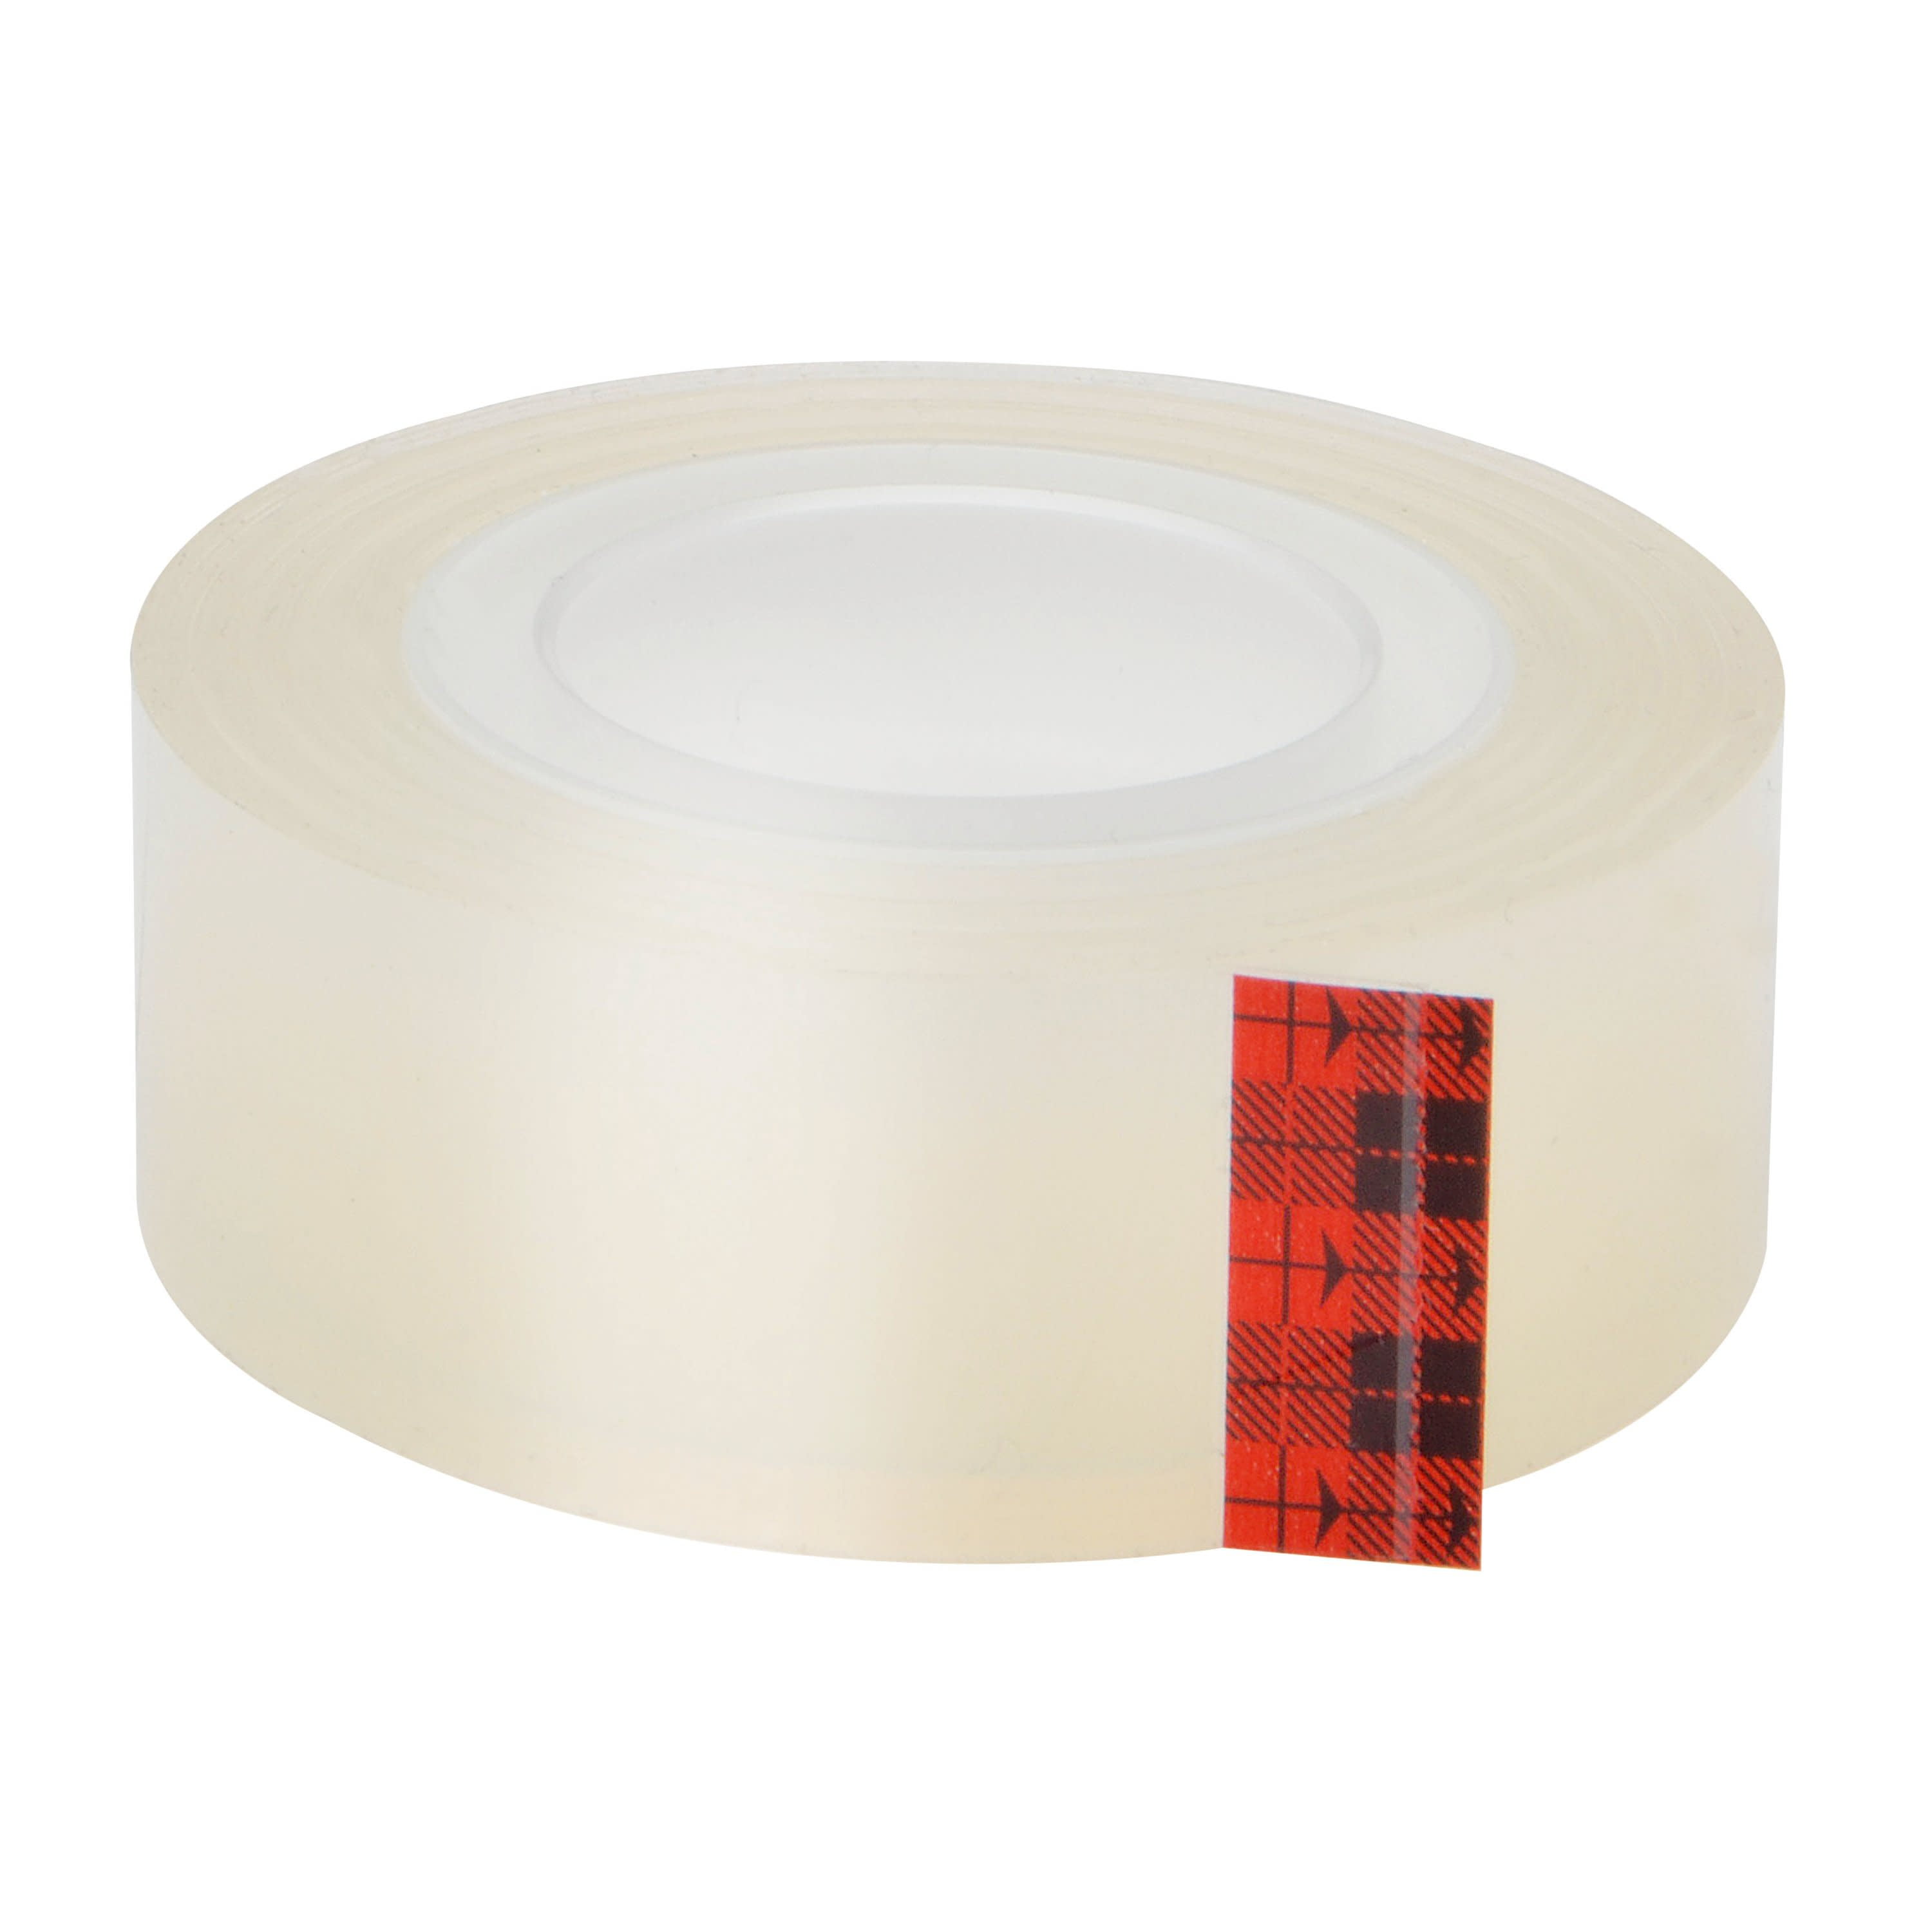 Scotch Wall Safe Tape Dispenser .75 in x 650 in Transparent 3M 183 2 Pack